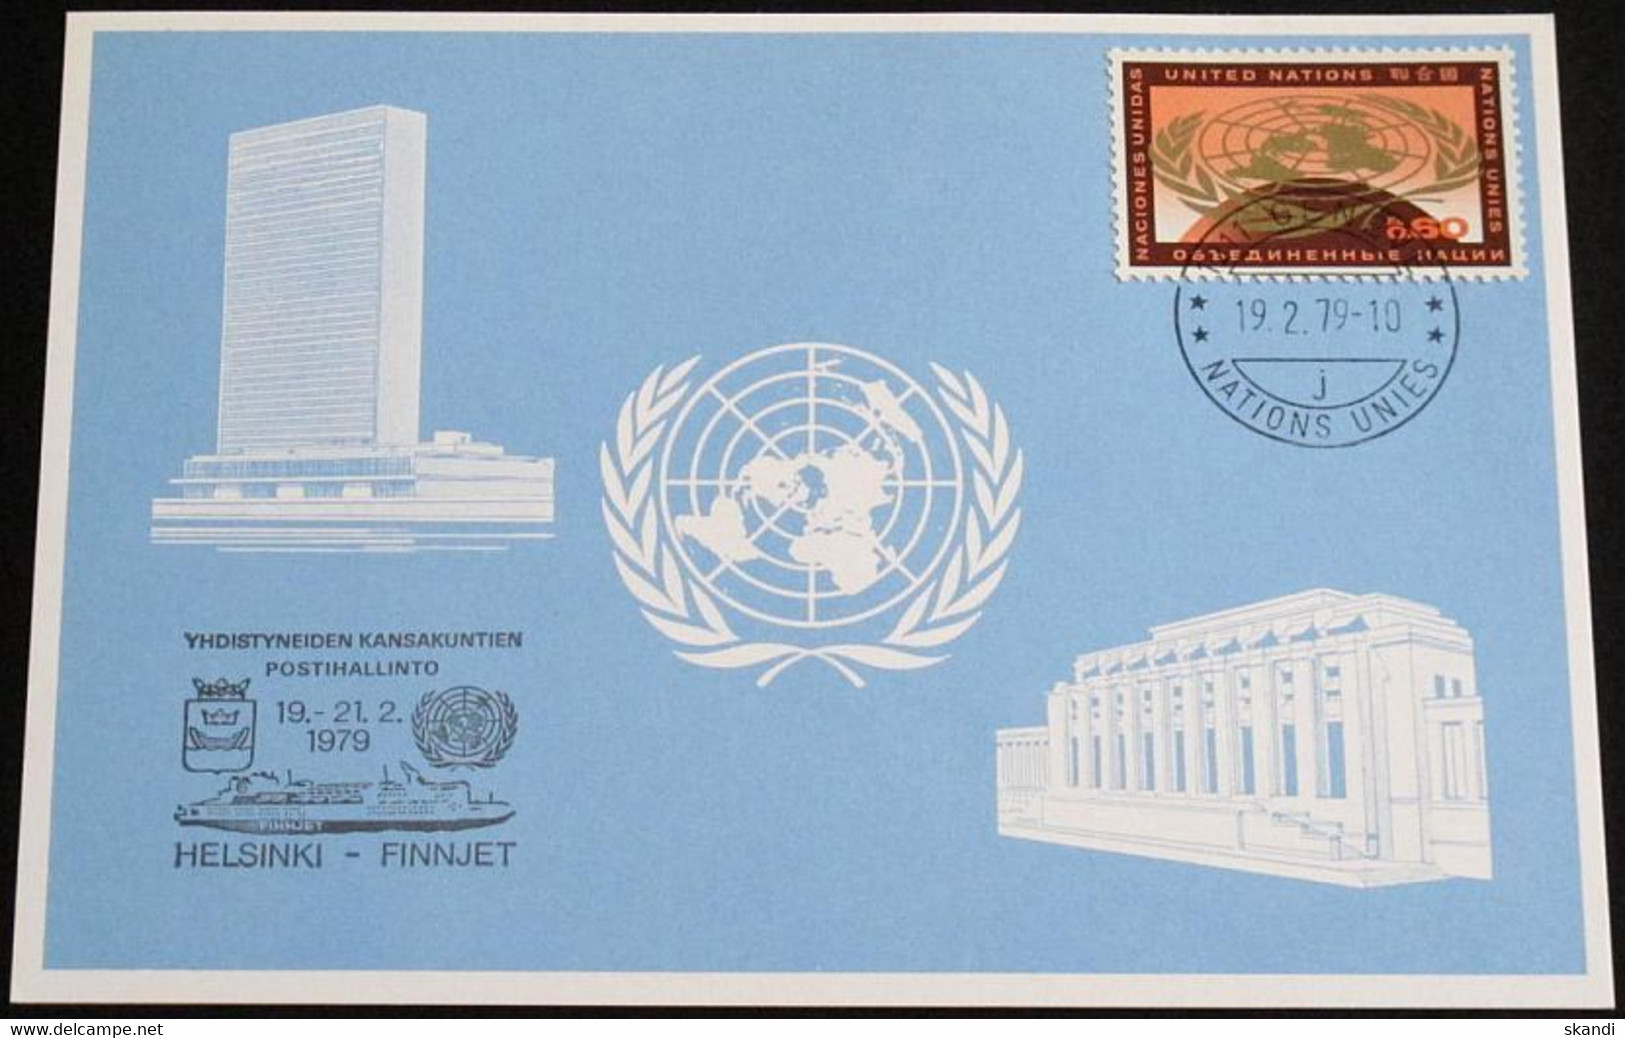 UNO GENF 1979 Mi-Nr. 74 Blaue Karte - Blue Card Mit Erinnerungsstempel HELSINKI - FINNJET - Brieven En Documenten